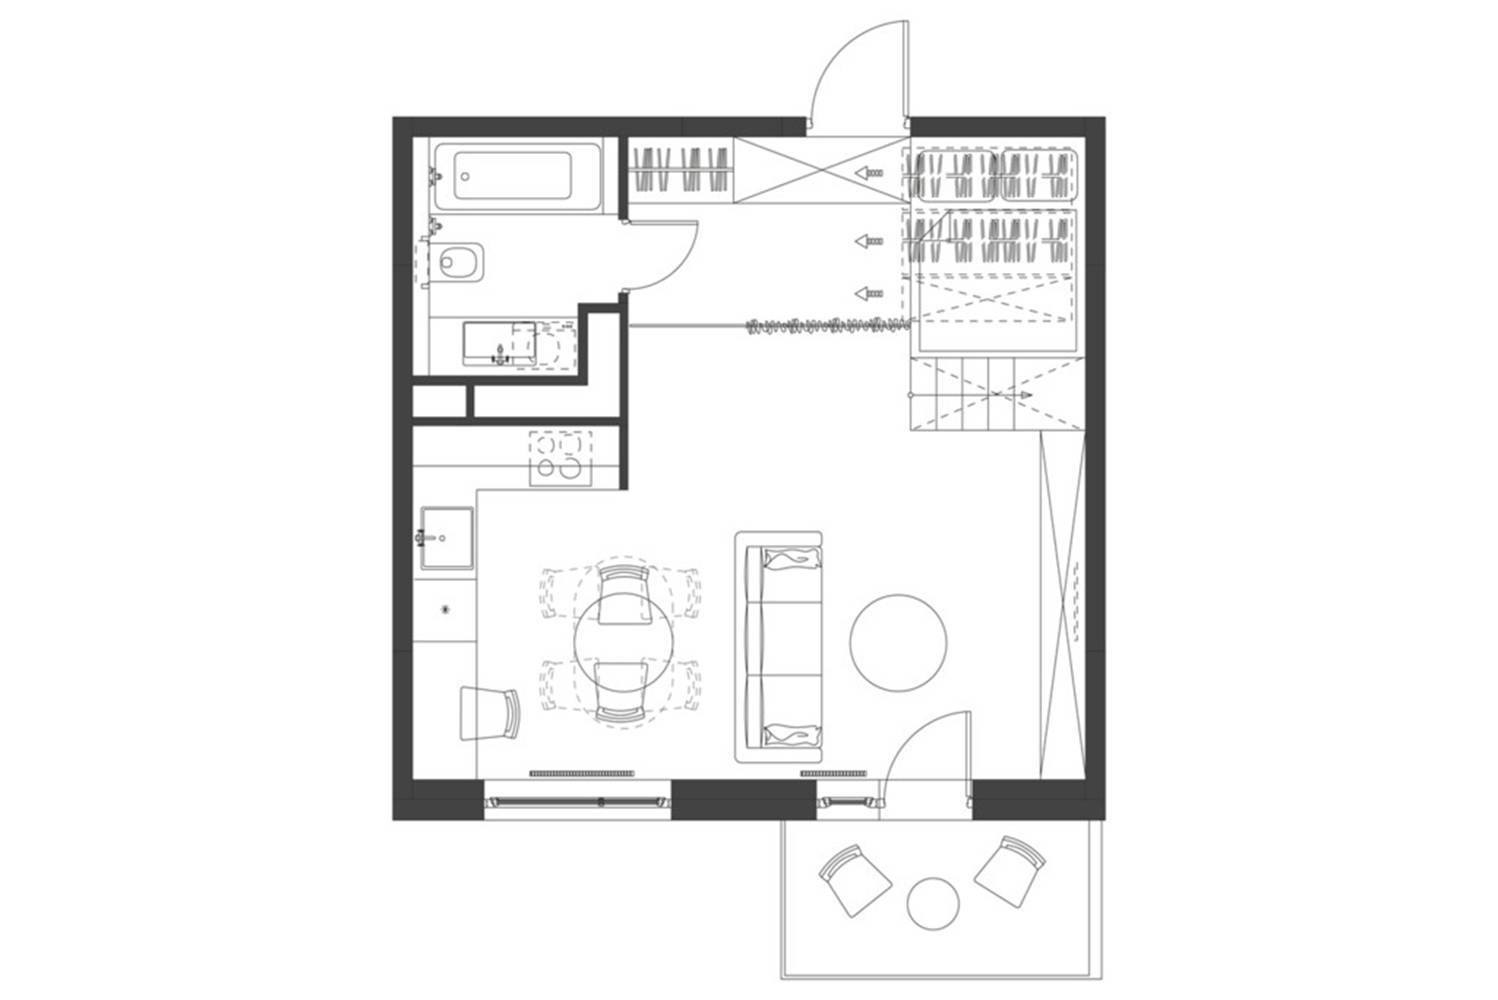 Cùng khám phá không gian sống độc đáo trong căn hộ 35m2 thiết kế tinh tế, không gian mở và tiện nghi đầy đủ. Hãy xem hình ảnh để tìm hiểu thêm về cách chủ nhân tạo ra một không gian đầy phong cách trong diện tích nhỏ.